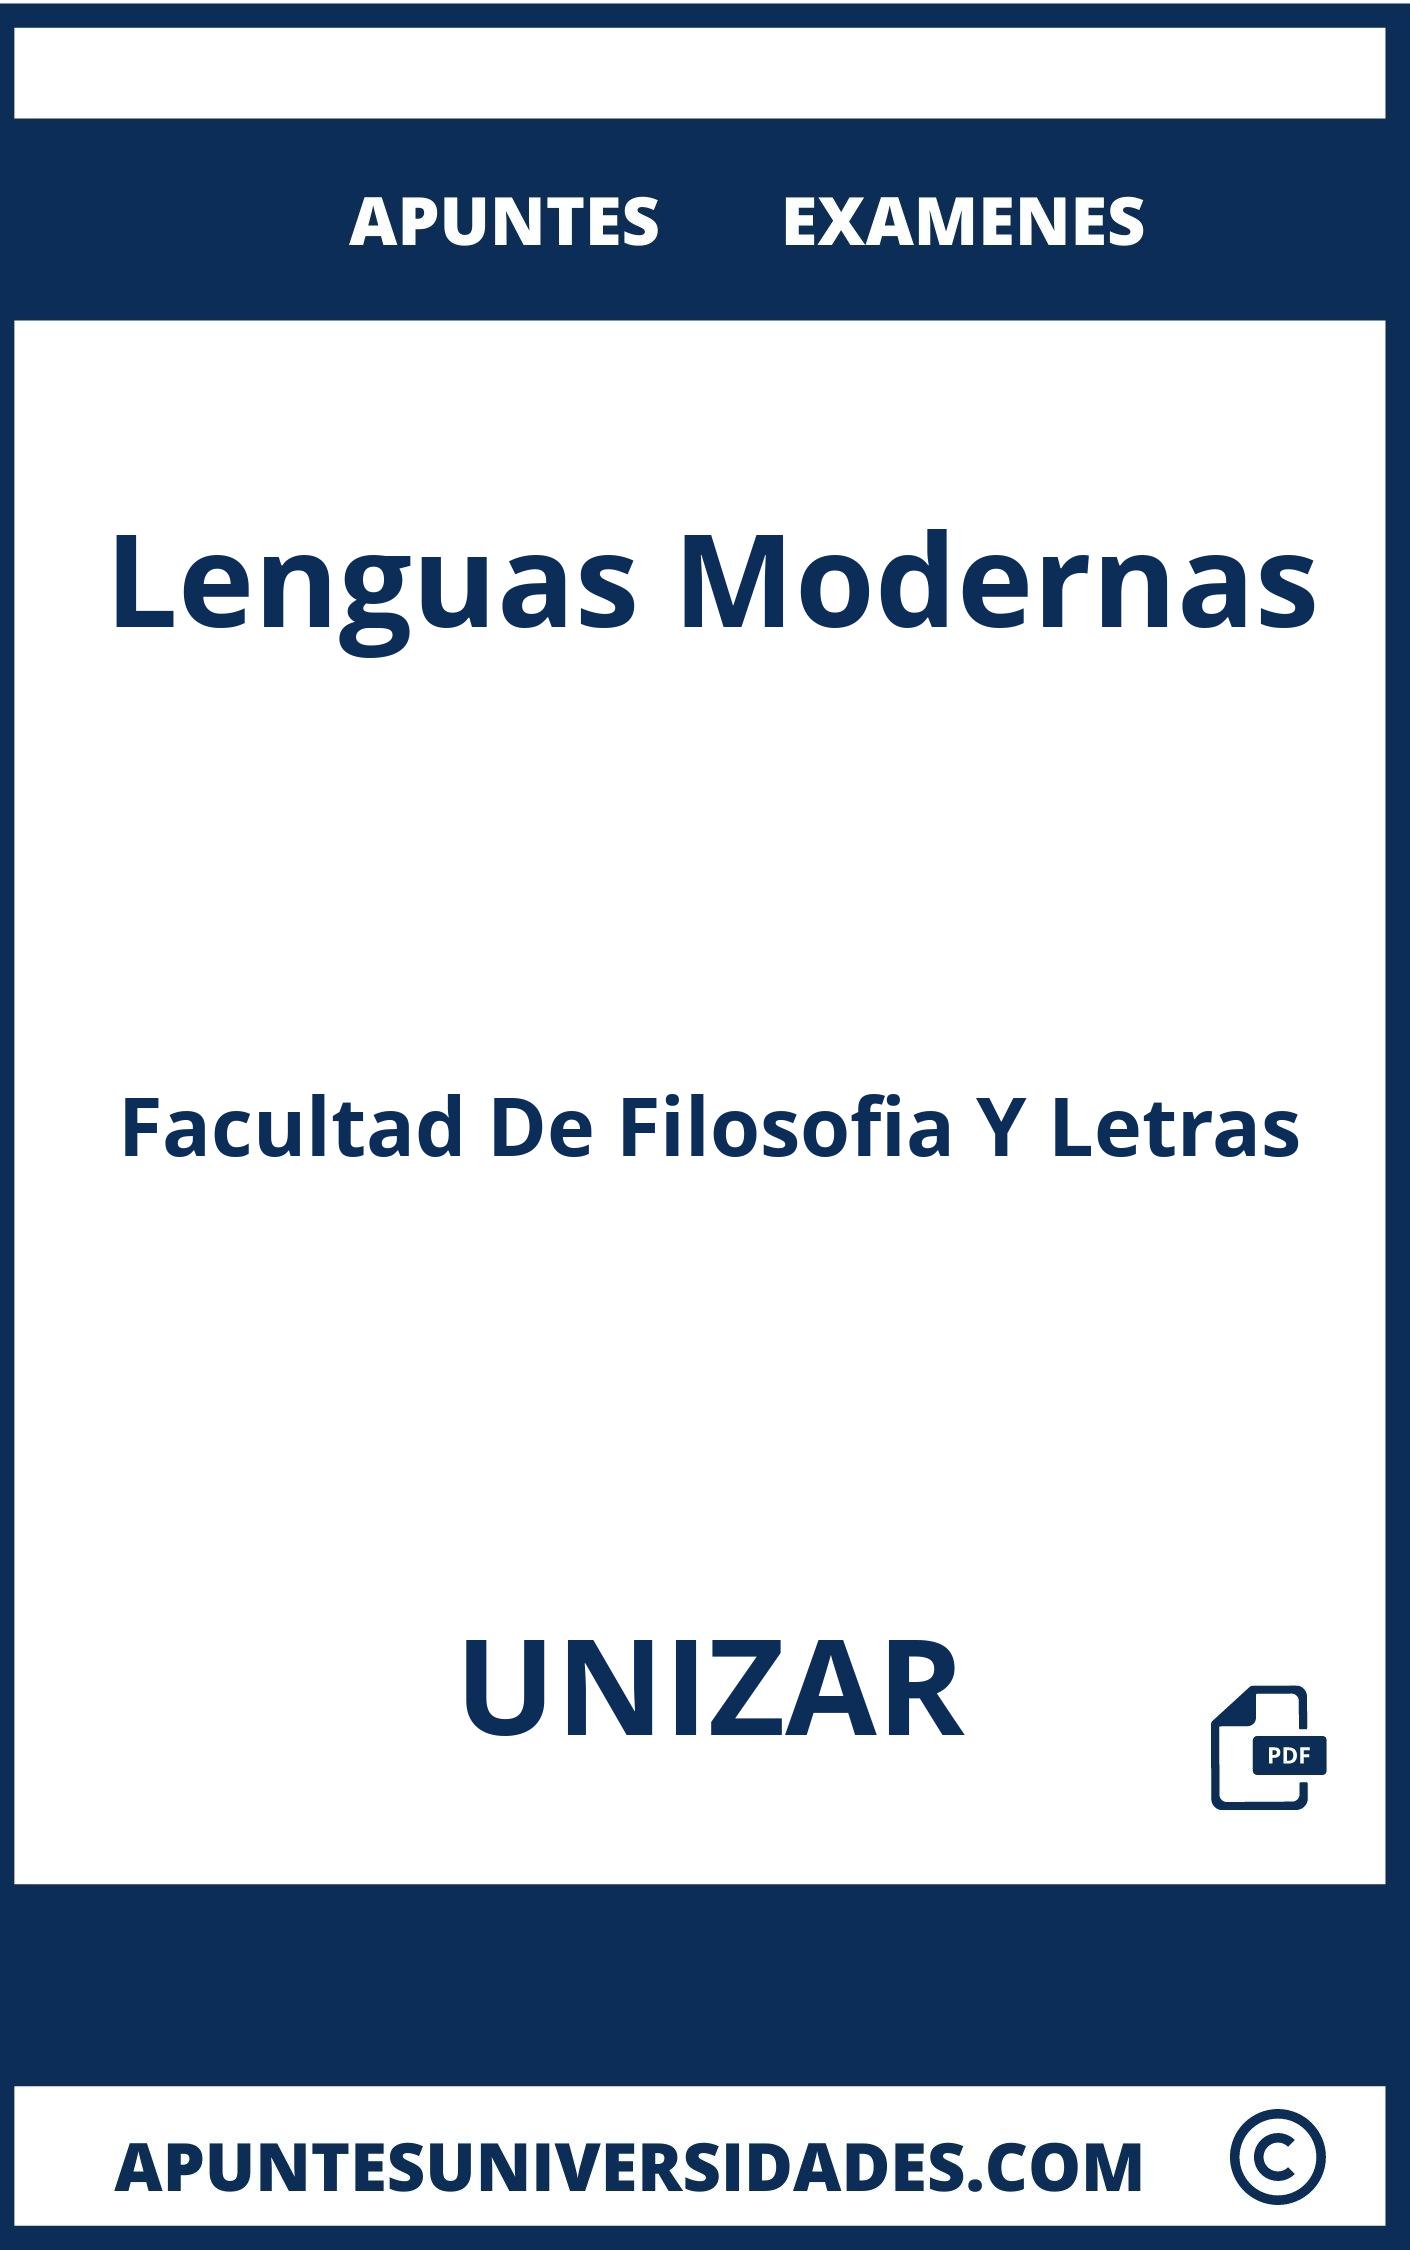 Examenes Apuntes Lenguas Modernas UNIZAR